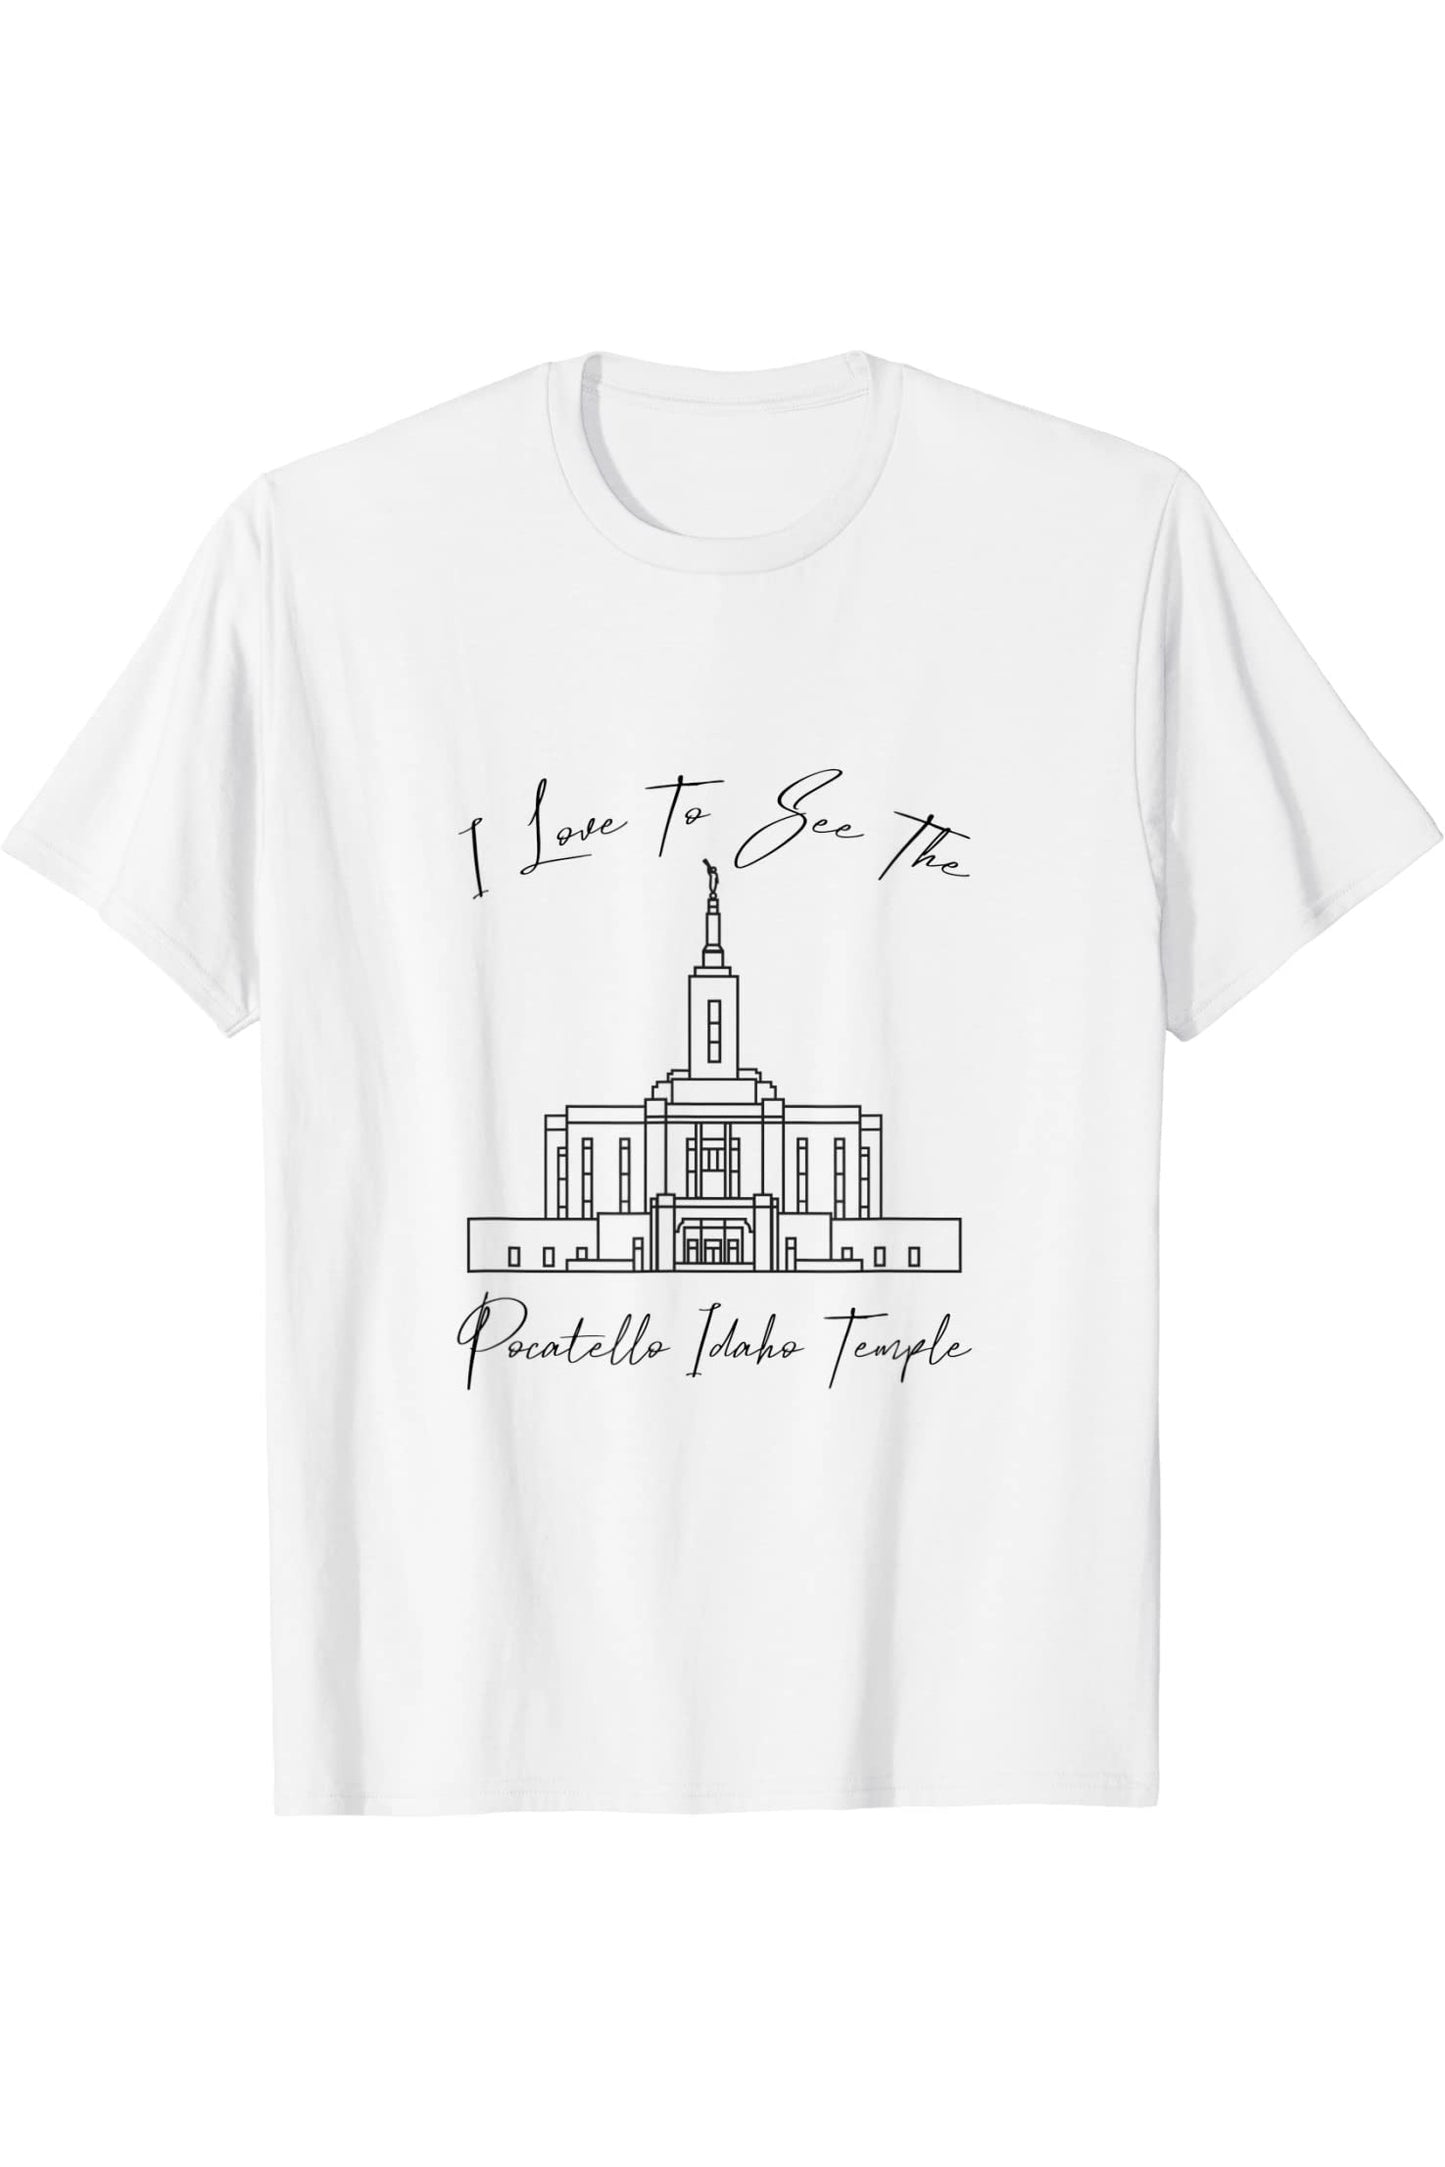 Pocatello ID Tempio, amo vedere il mio tempio, calligrafia T-Shirt